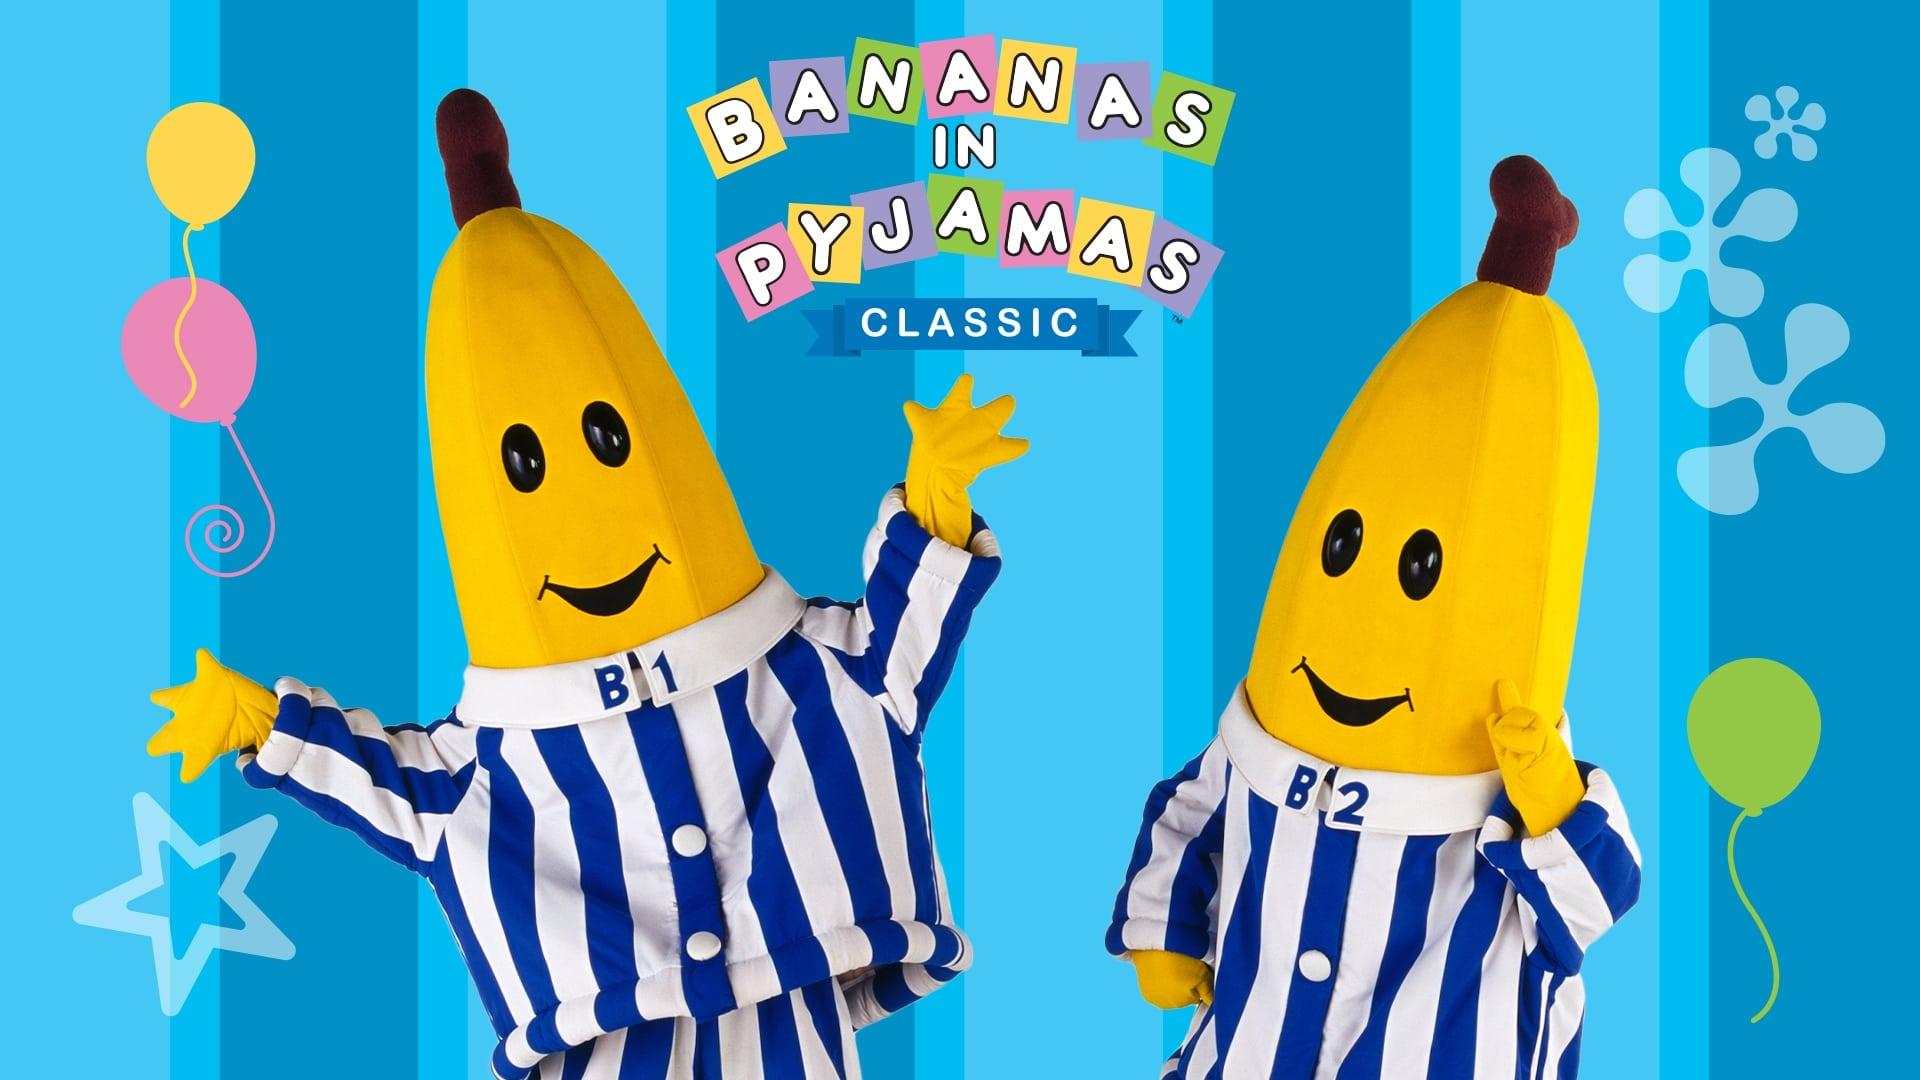 Bananas in Pyjamas backdrop